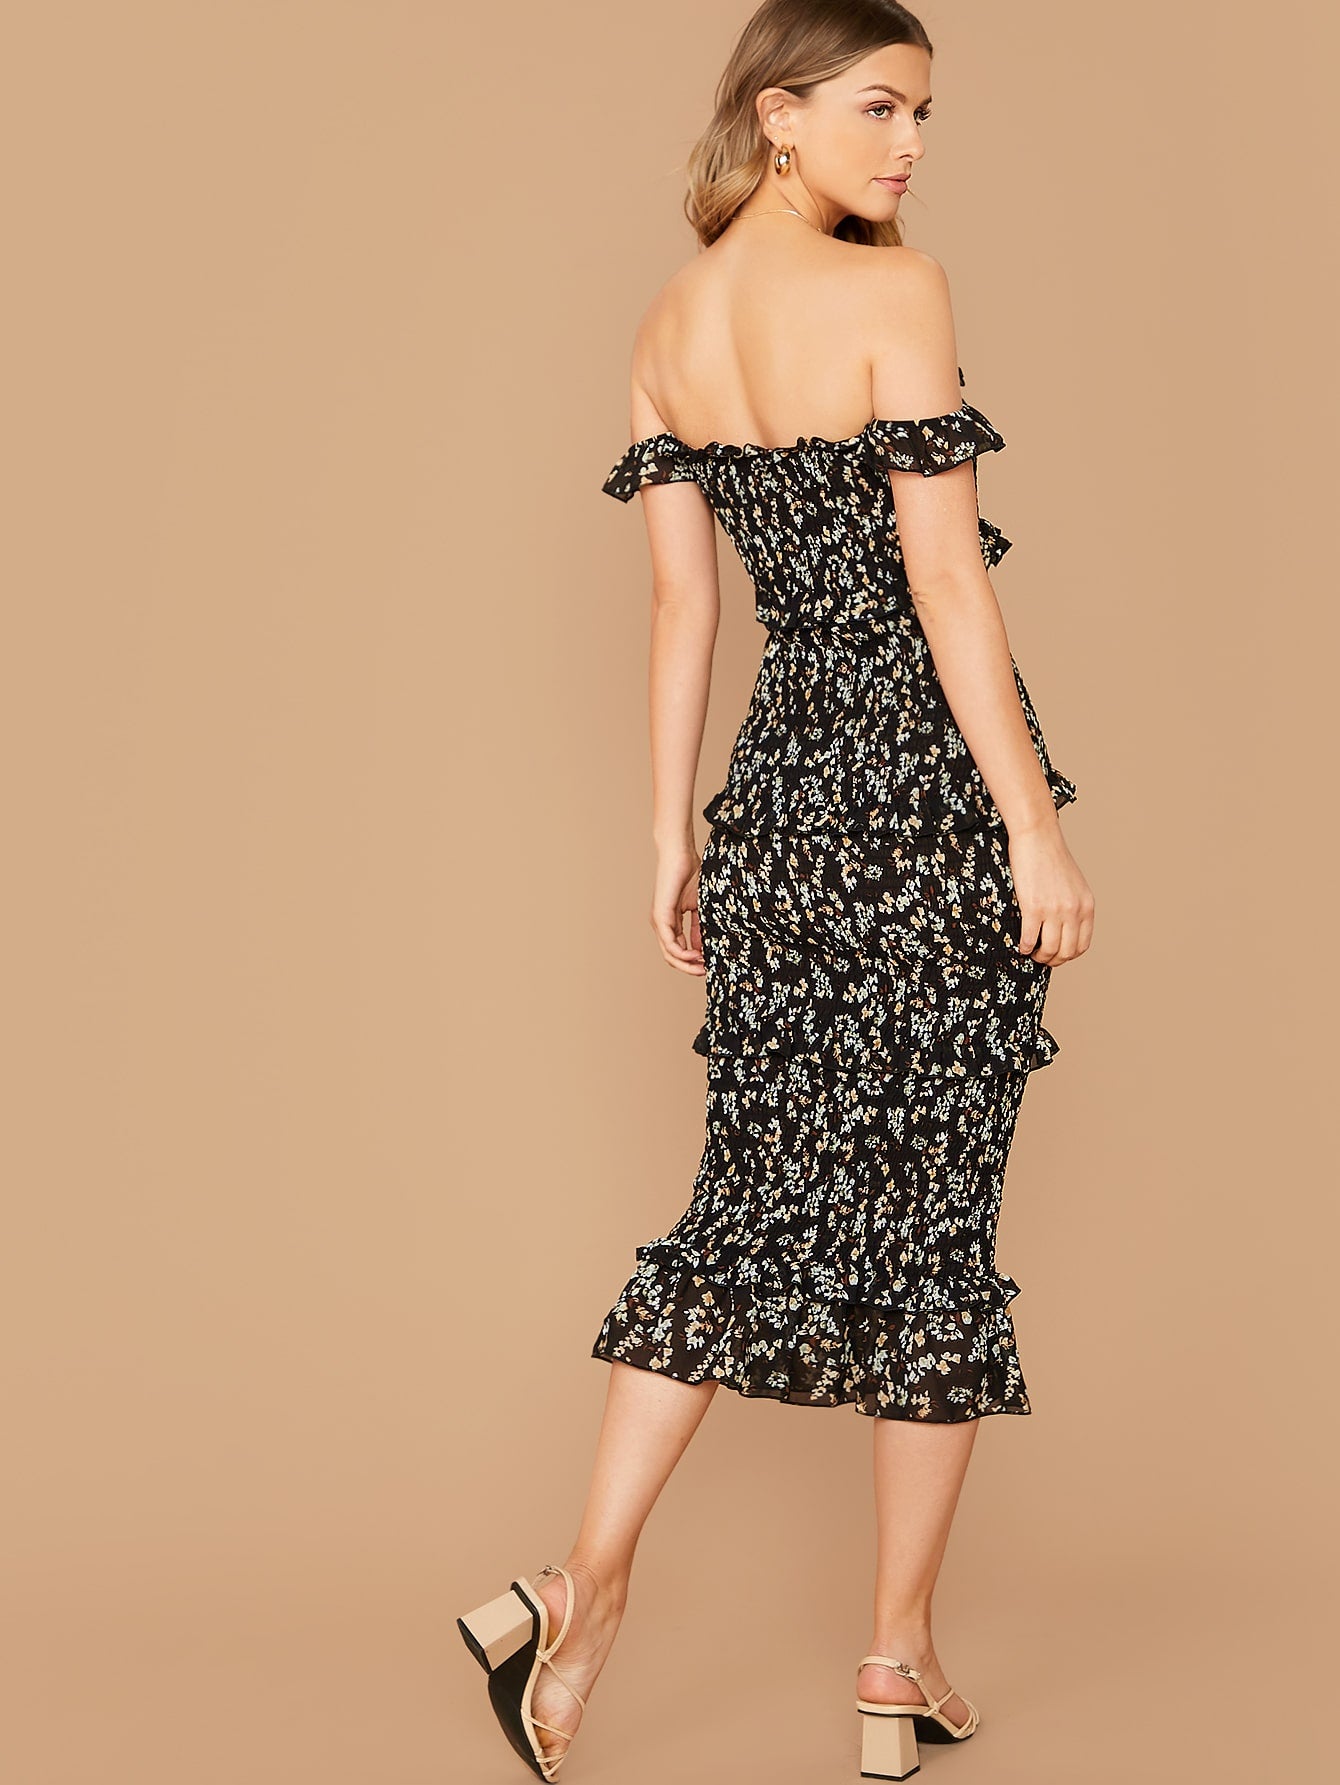 Ruffle Detail Shirred Ditsy Floral Bardot Dress